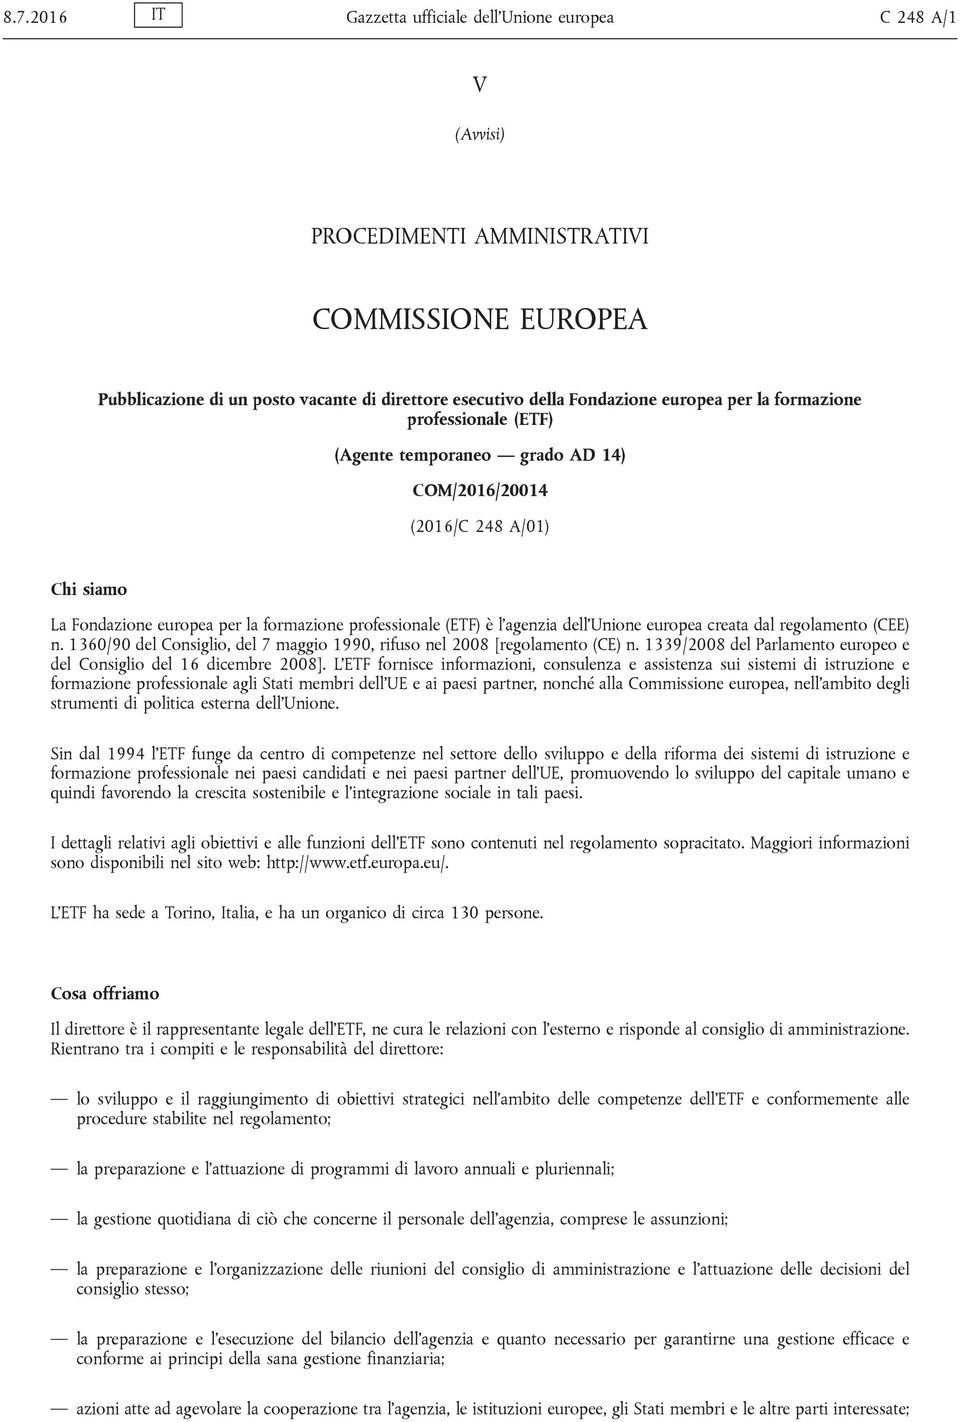 Unione europea creata dal regolamento (CEE) n. 1360/90 del Consiglio, del 7 maggio 1990, rifuso nel 2008 [regolamento (CE) n. 1339/2008 del Parlamento europeo e del Consiglio del 16 dicembre 2008].